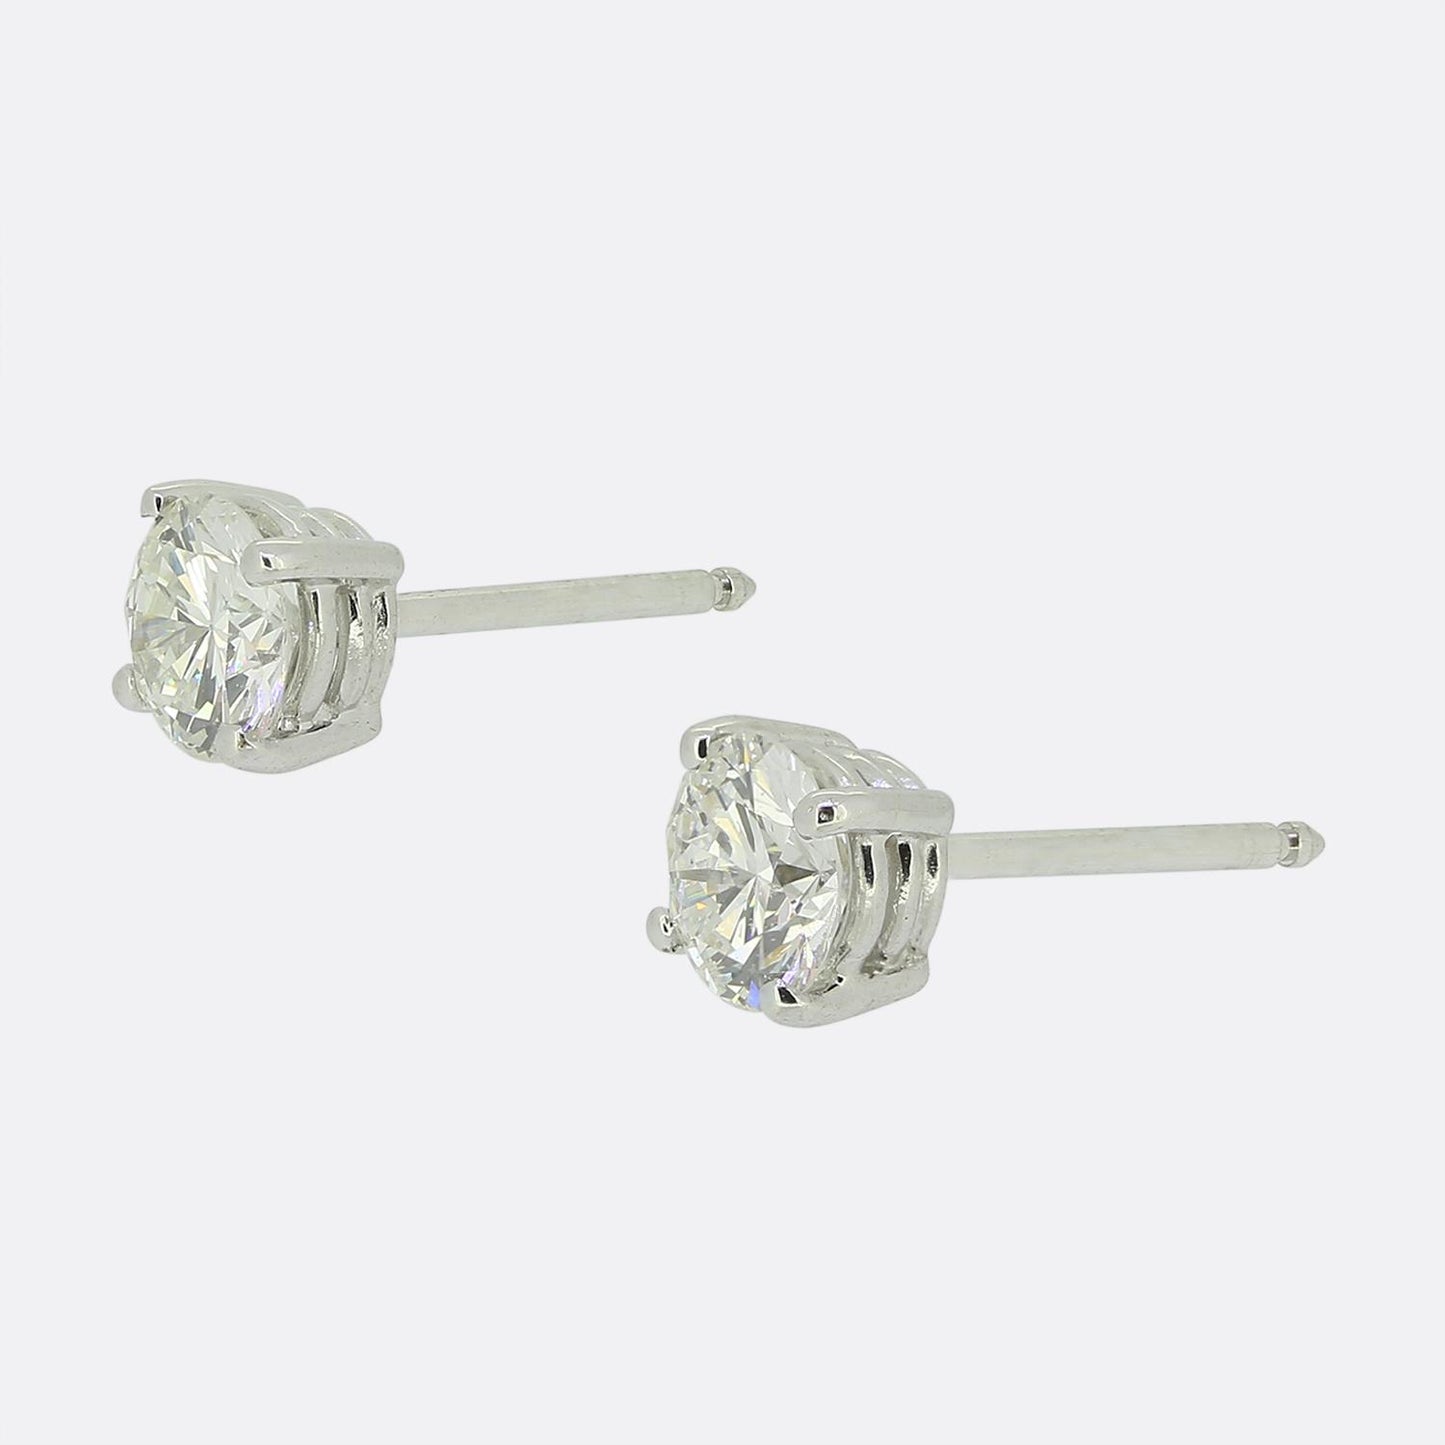 1.00 Carat Diamond Stud Earrings